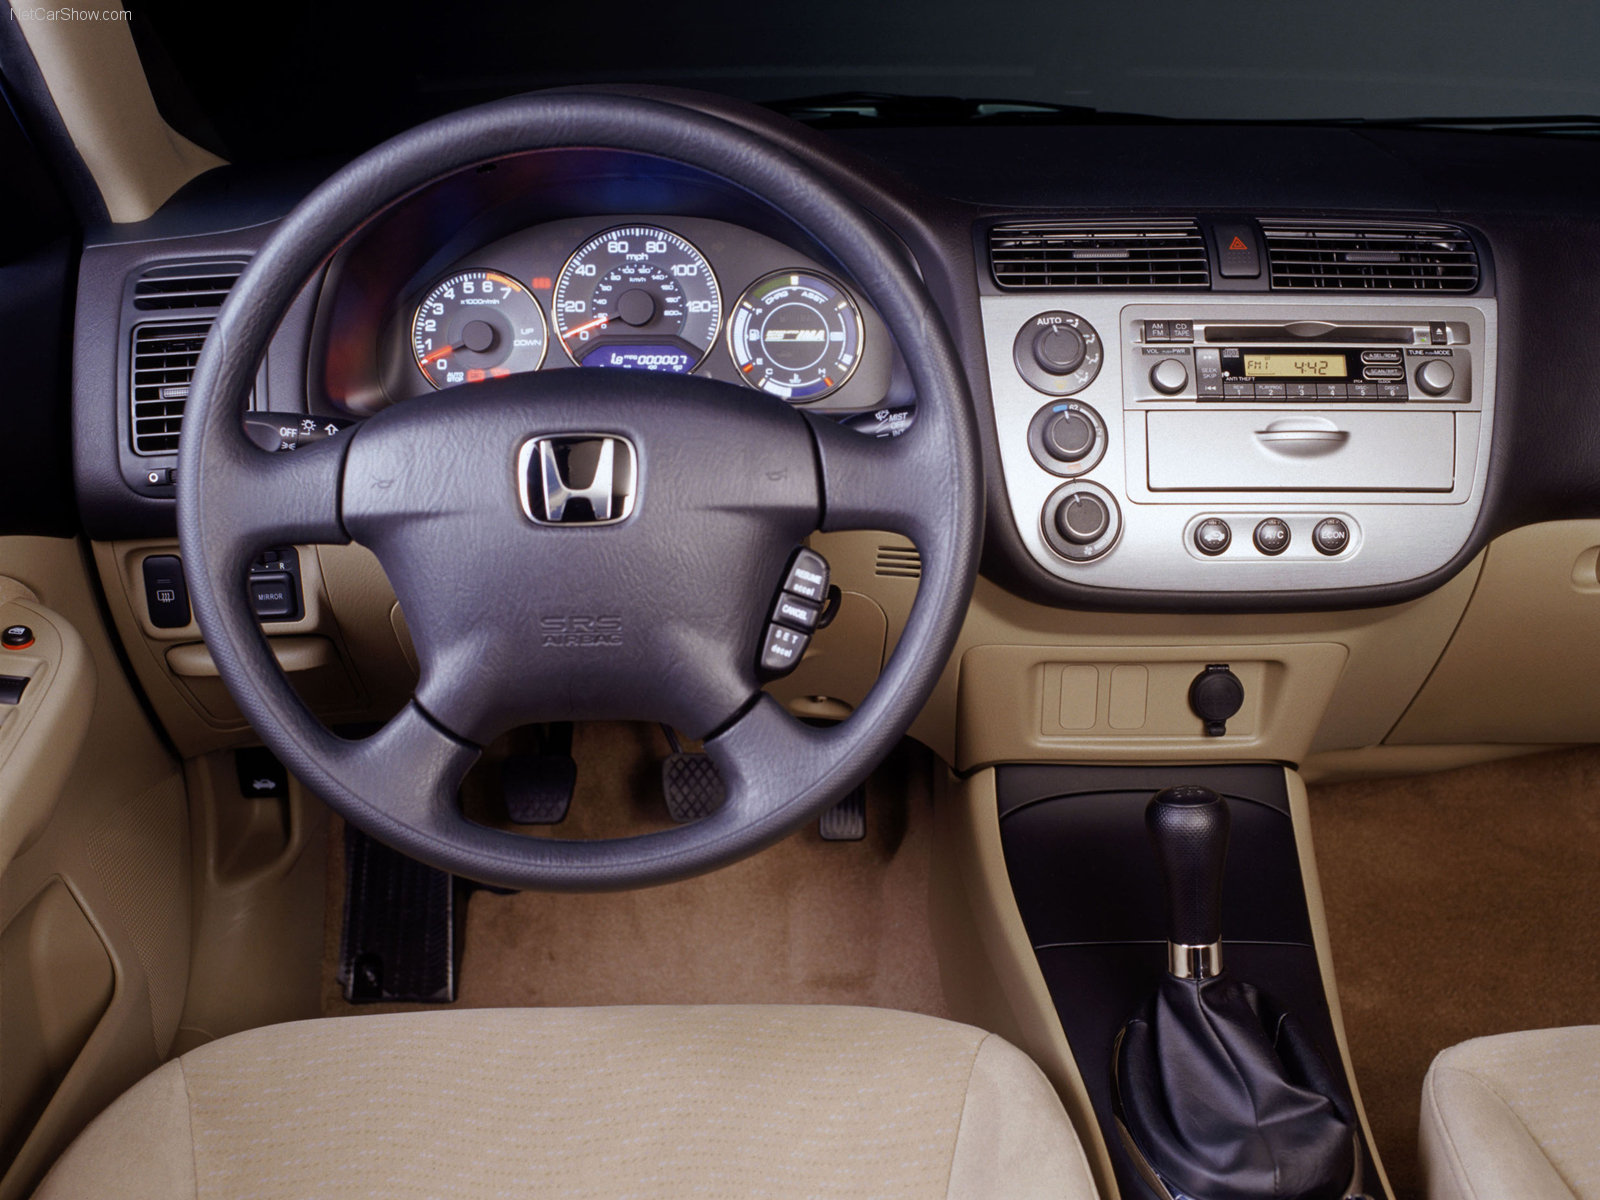 Honda Civic Hybrid 2003 Honda-Civic_Hybrid-2003-1600-1a